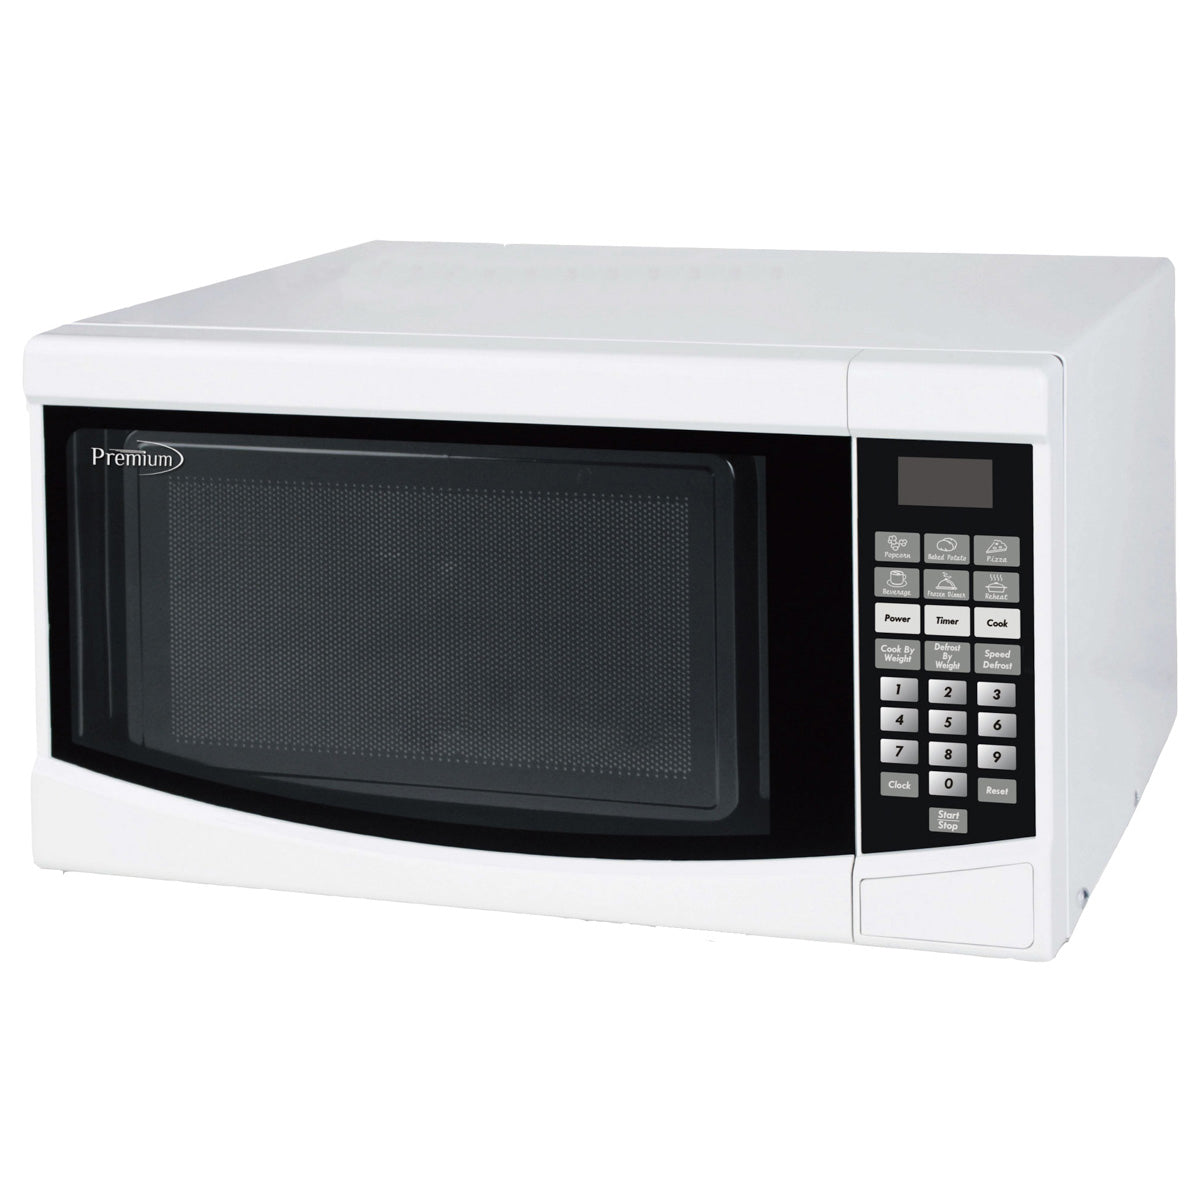 Premium Levella®  0.7  Watt White Countertop Microwave Oven